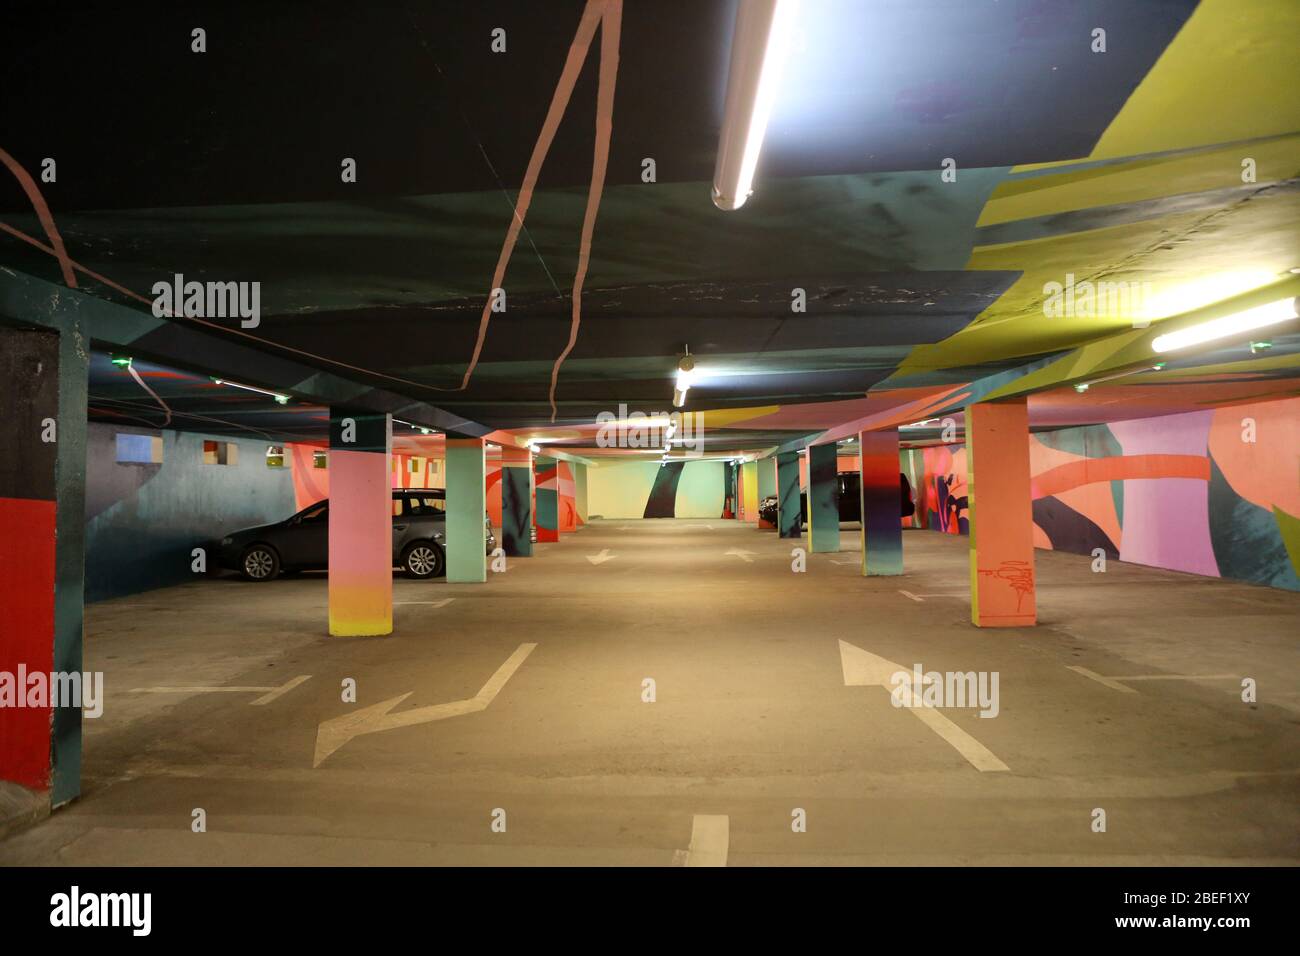 Flèches directionnelles sur le sol. Parking souterrain gratuit. 2KM3. Saint-Gervais-les-Bains. Haute-Savoie. France. Stock Photo